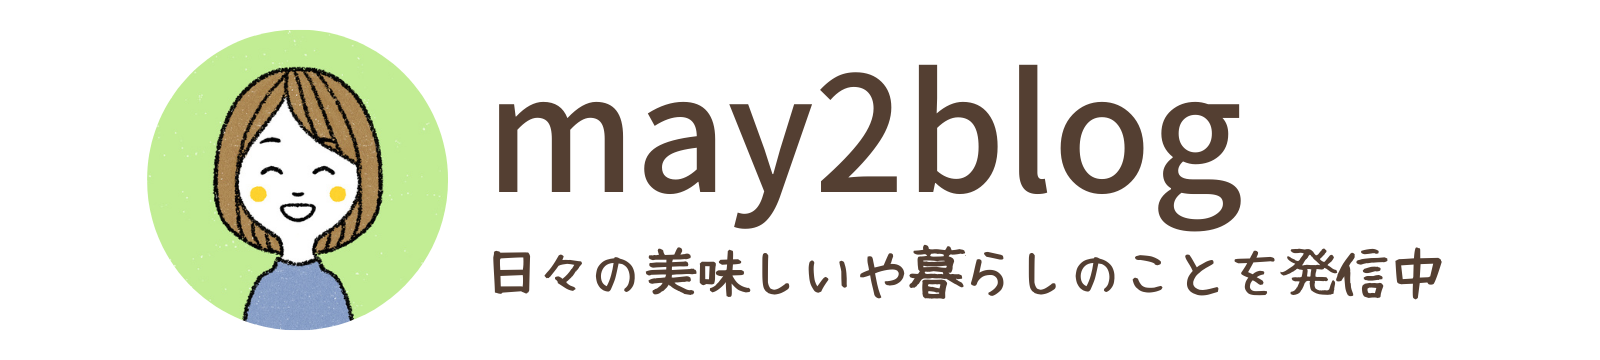 may2blog